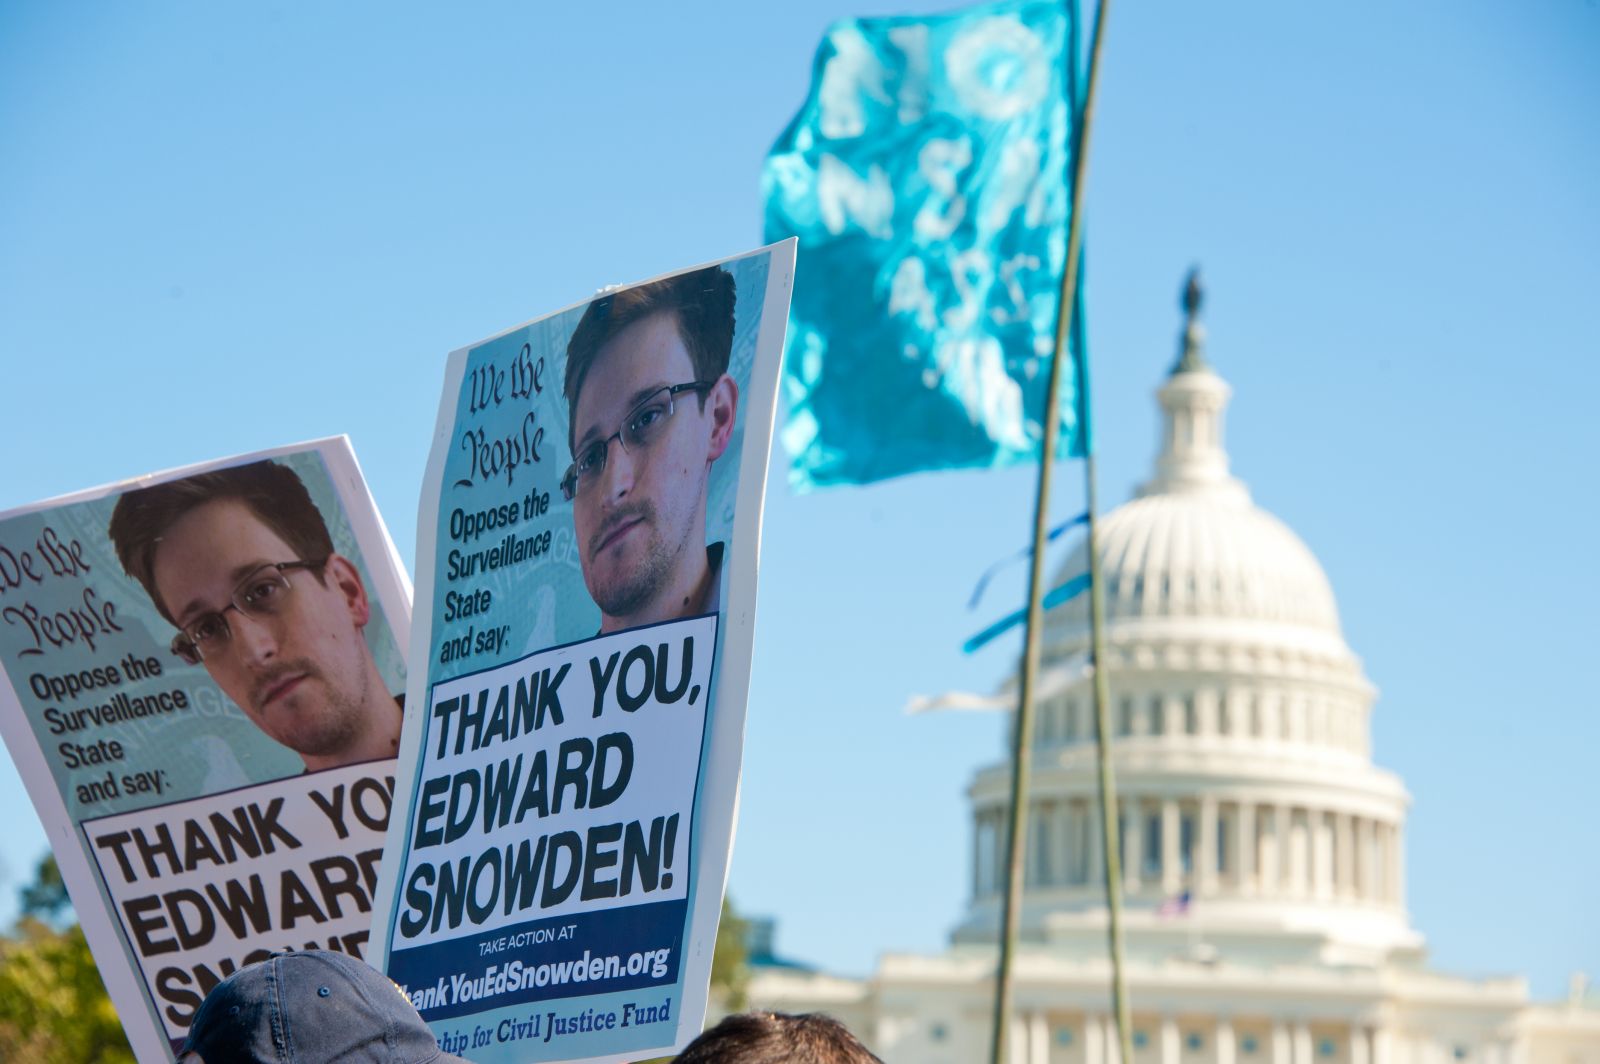 הפגנה נגד מעקב ממשלתי אחר אזרחים. וושינגטון, ארה"ב, 26.10.13